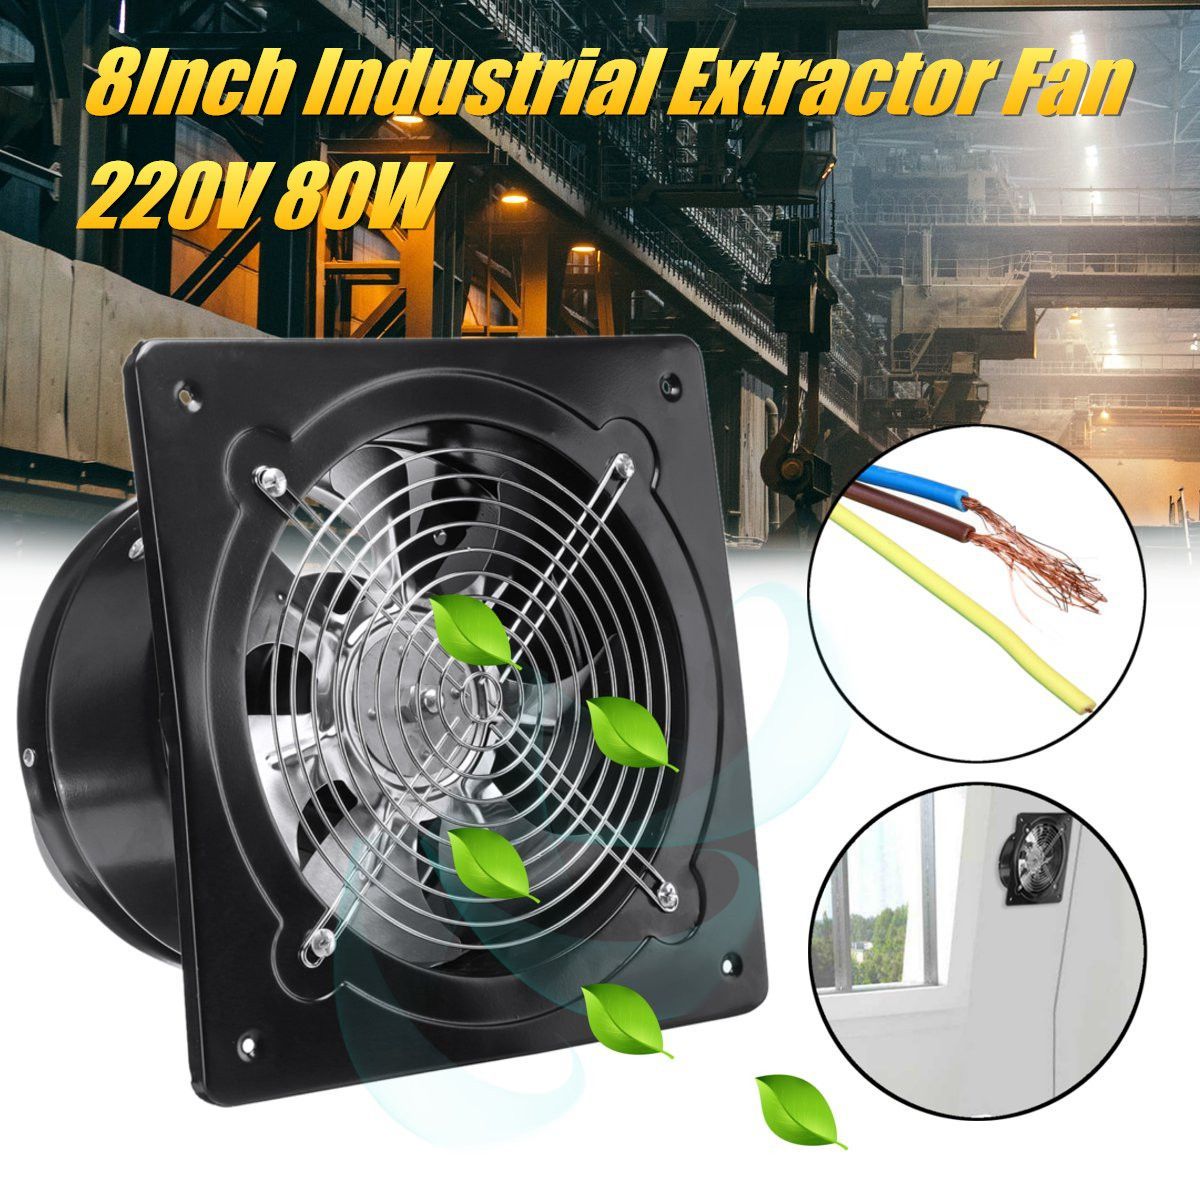 80W-220V-8-Inch-Industrial-Extractor-Blower-Fan-Ventilation-Fans-1553794